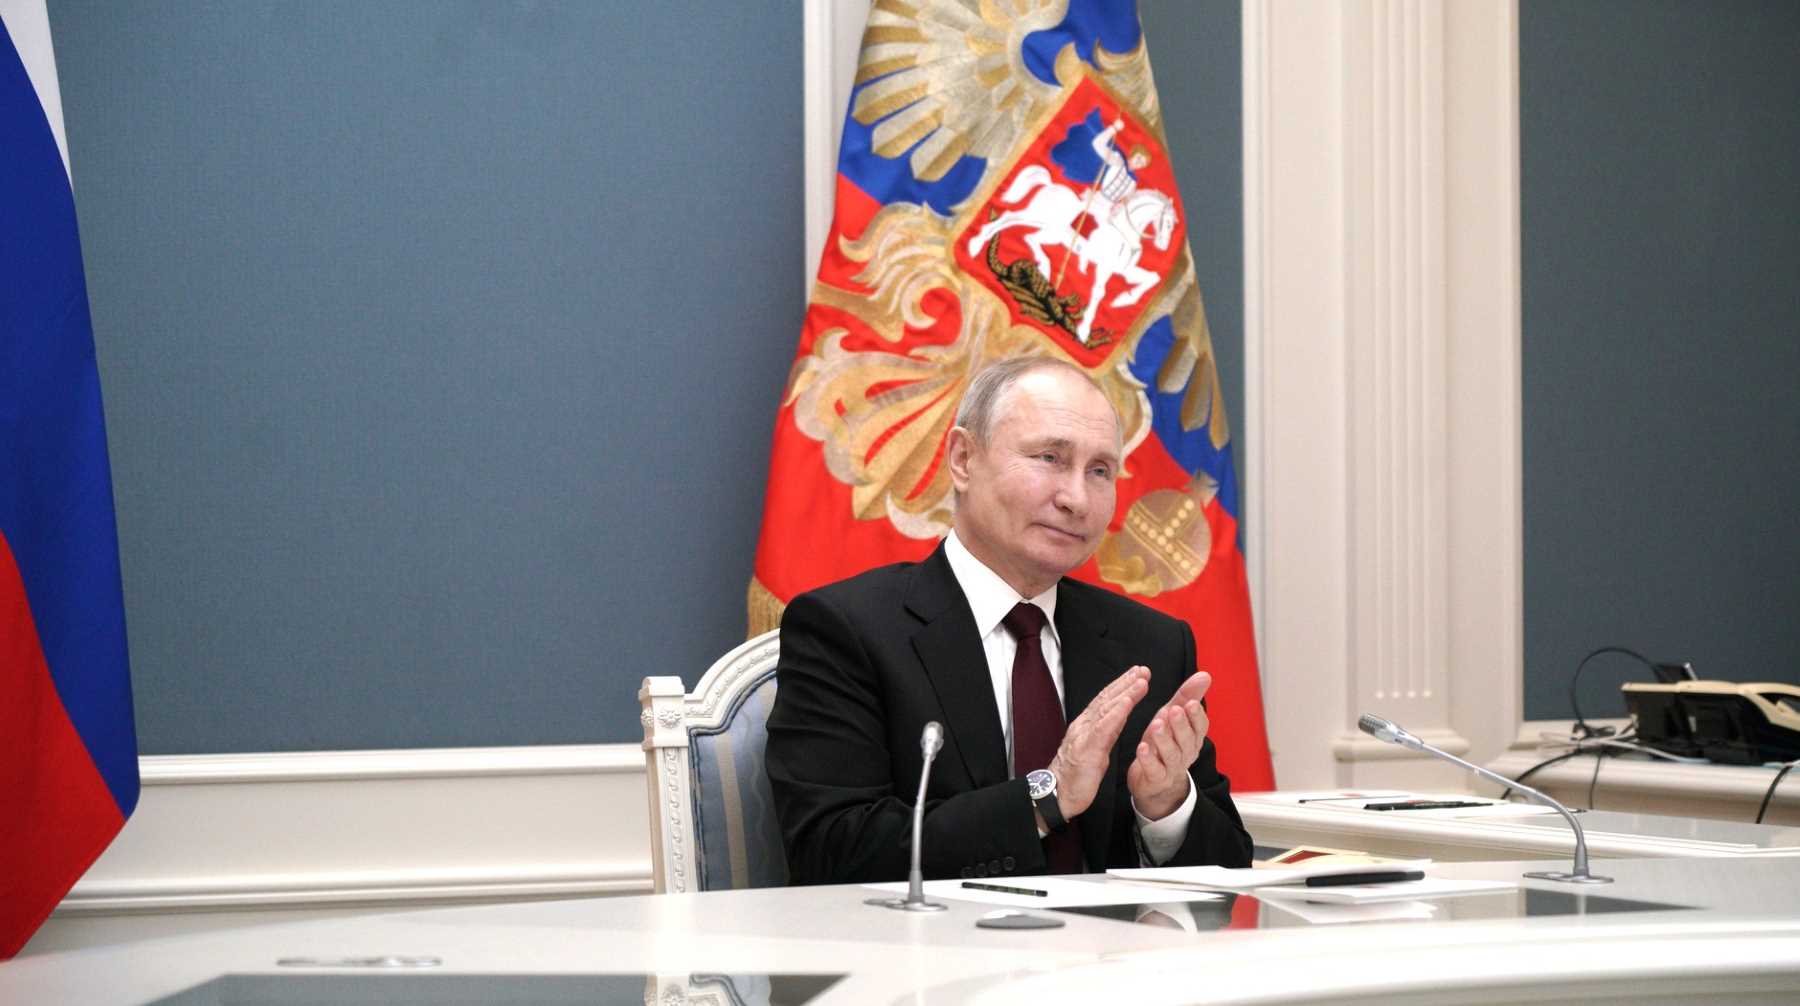 Падать в манеже было не больно, признался президент России Фото: © Global Look Press / Kremlin Pool